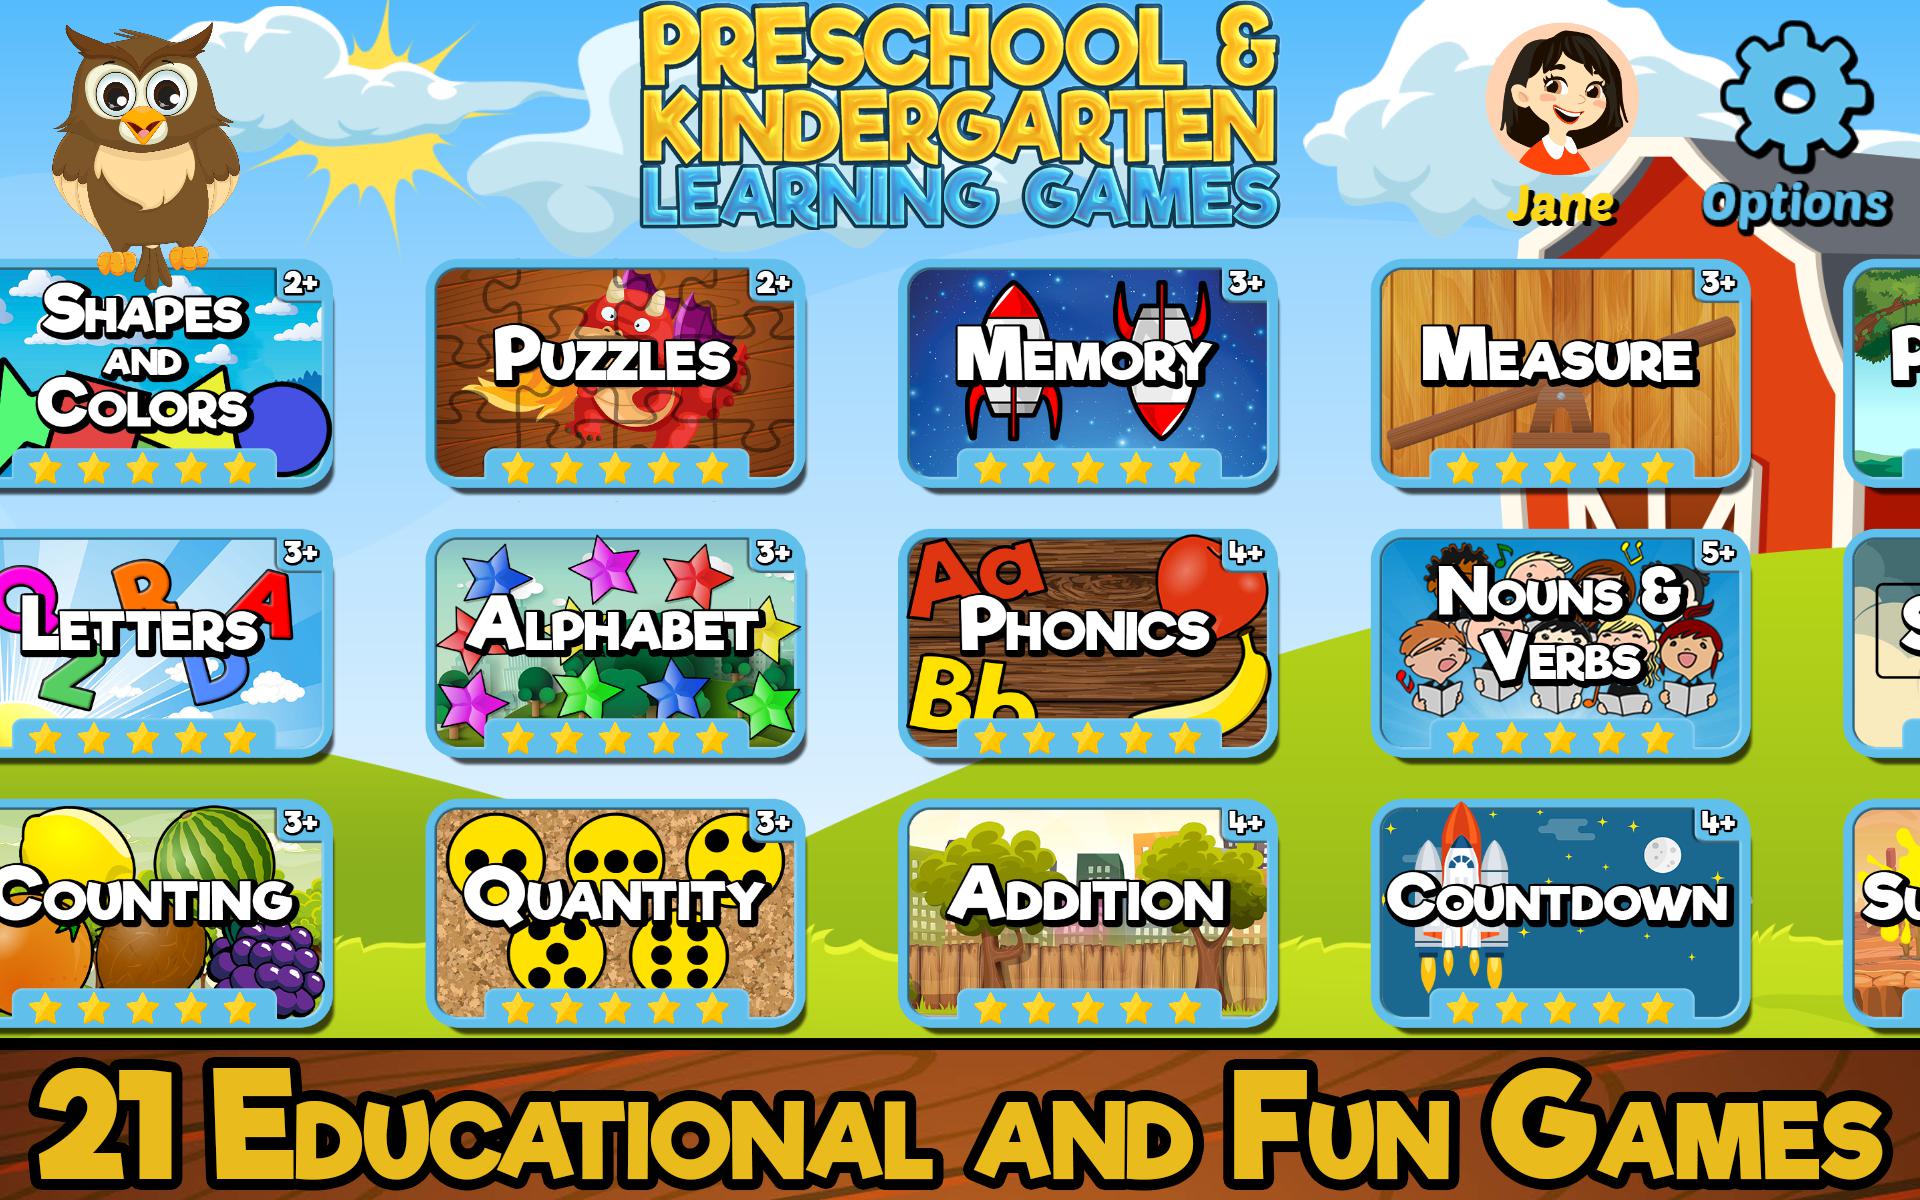 Preschool and Kindergarten Learning Games